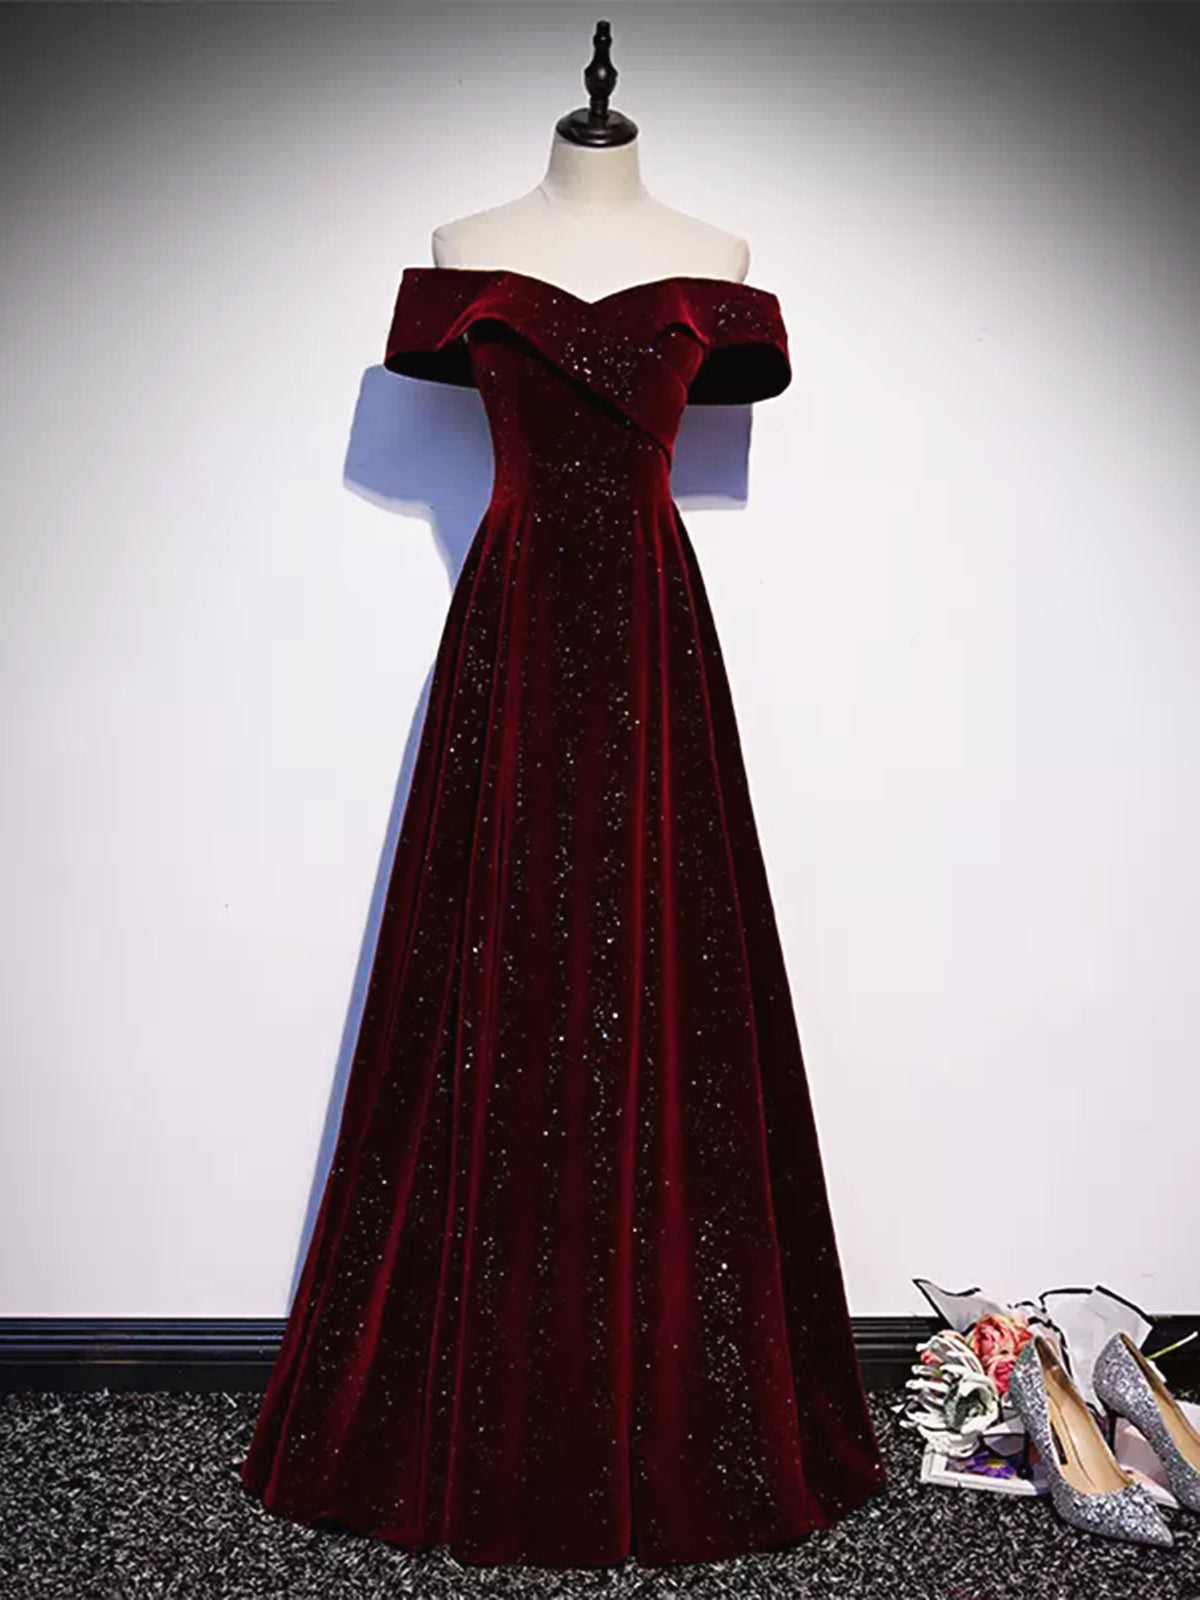 Off the Shoulder Burgundy Velvet Long Prom Dresses For Black girls For Women, Wine Red Long Formal Graduation Dresses